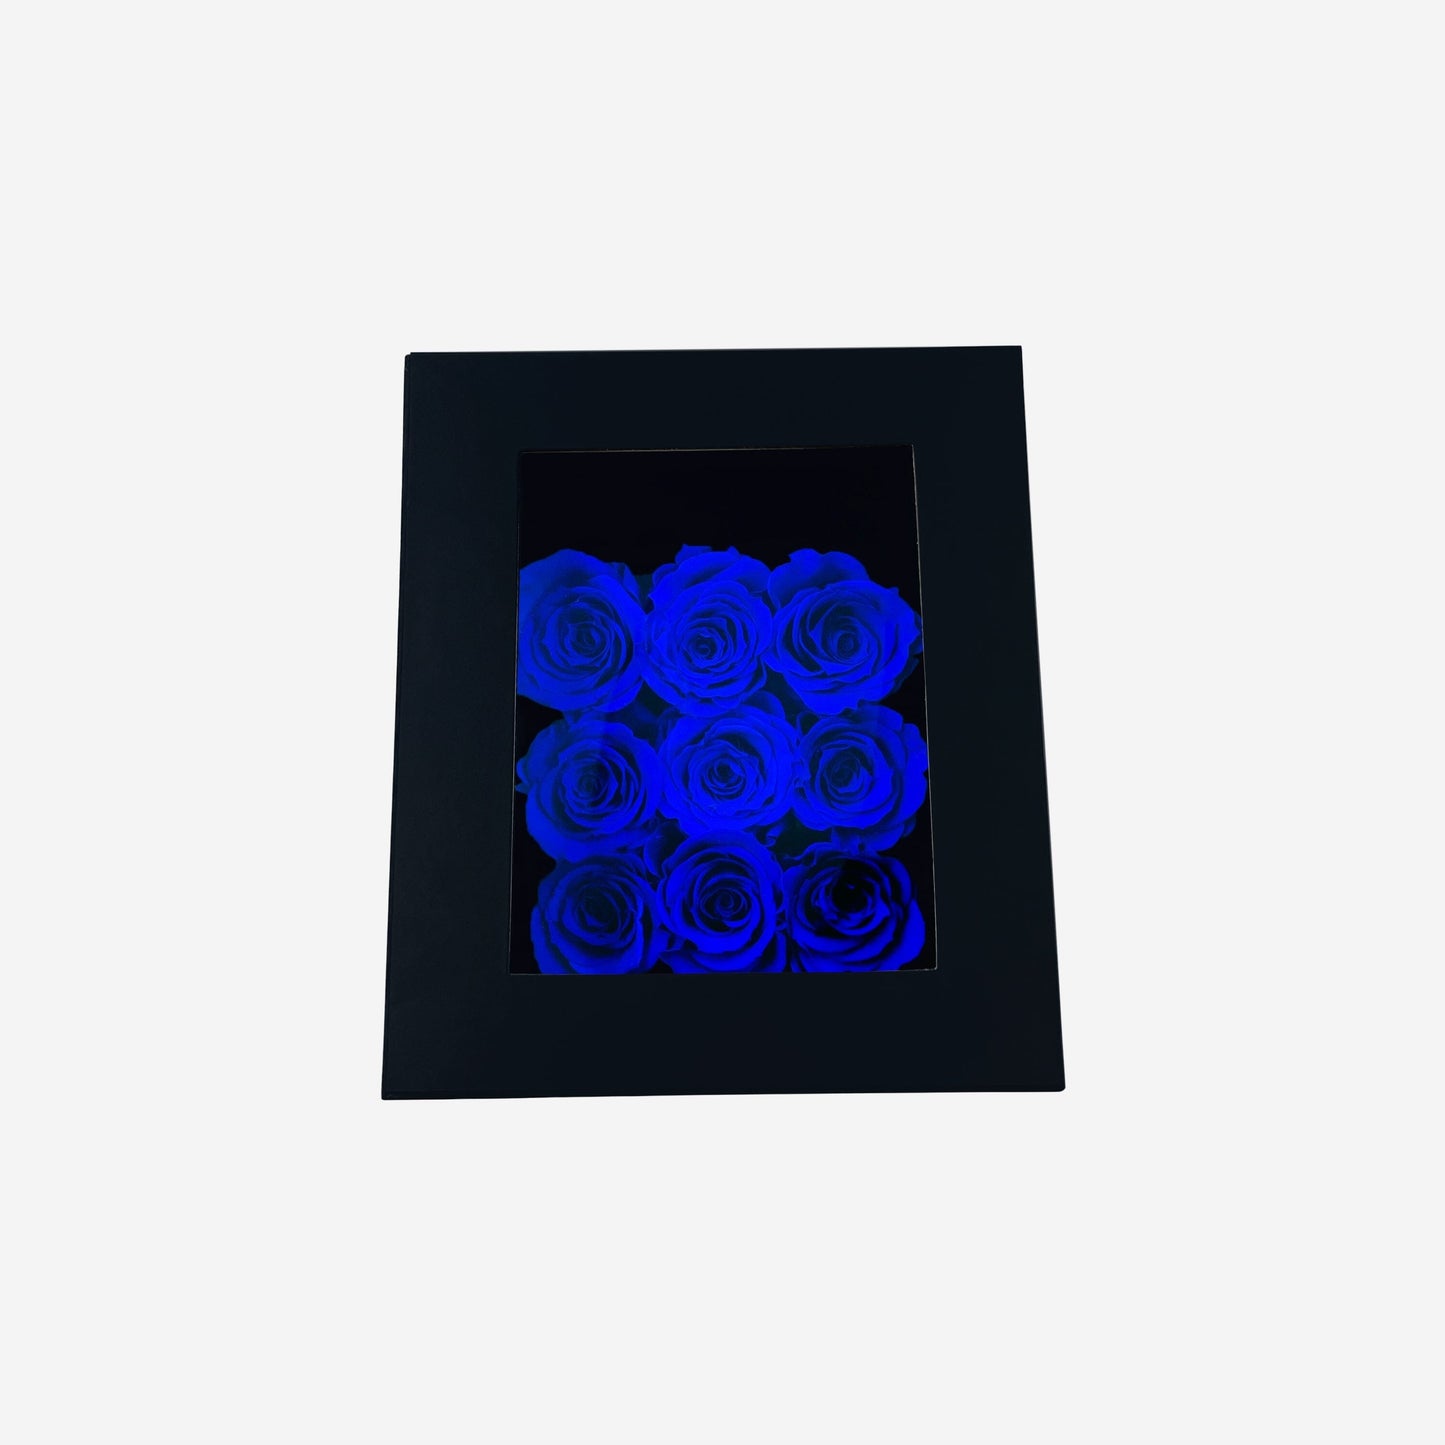 Trapezoid Black Box | Royal Blue Roses - The Million Roses